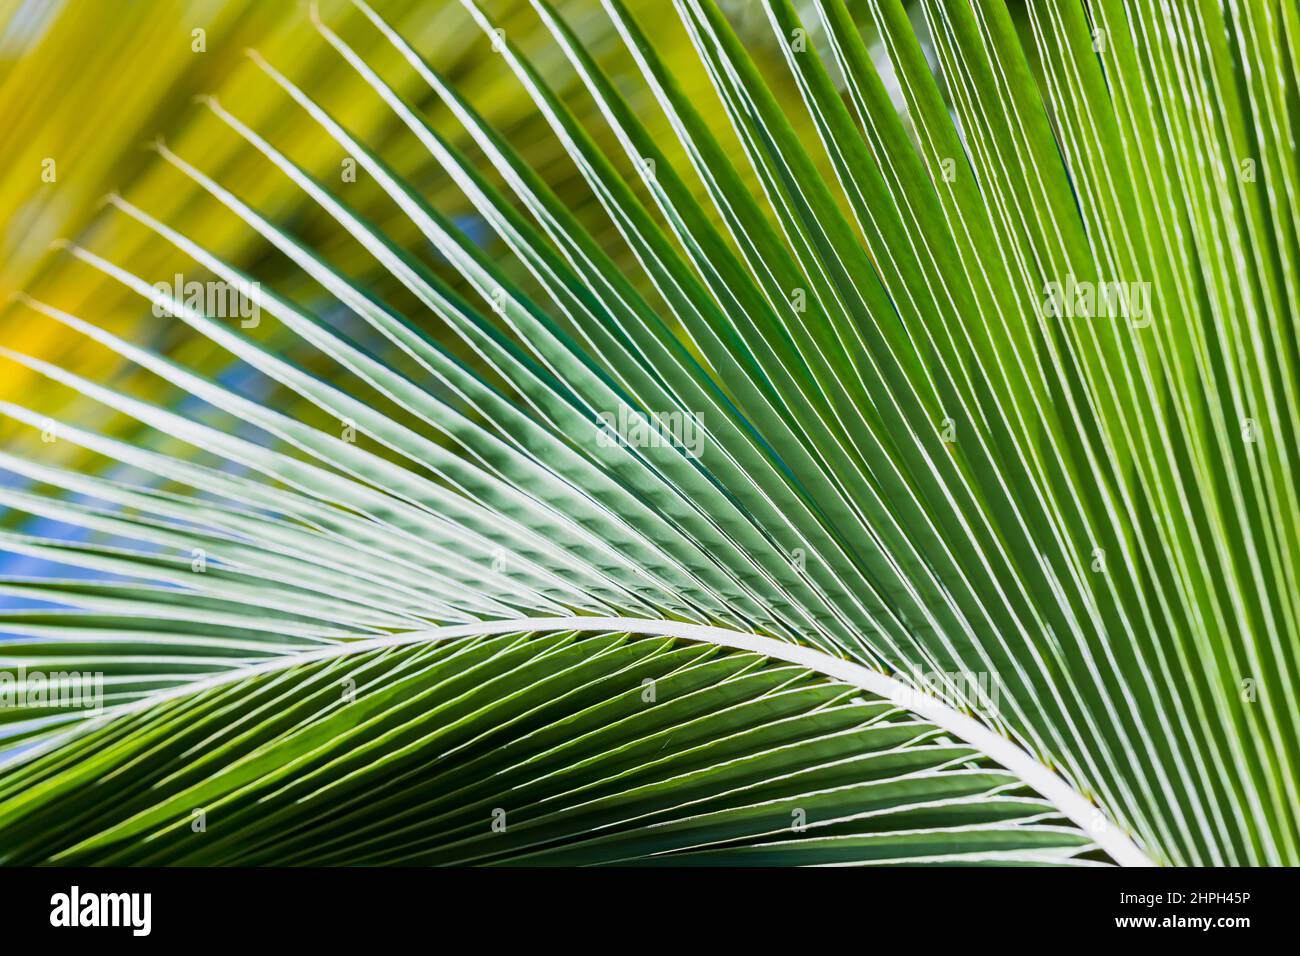 Motif feuilles de palmier vert frais, texture naturelle abstraite de la photo d'arrière-plan Banque D'Images